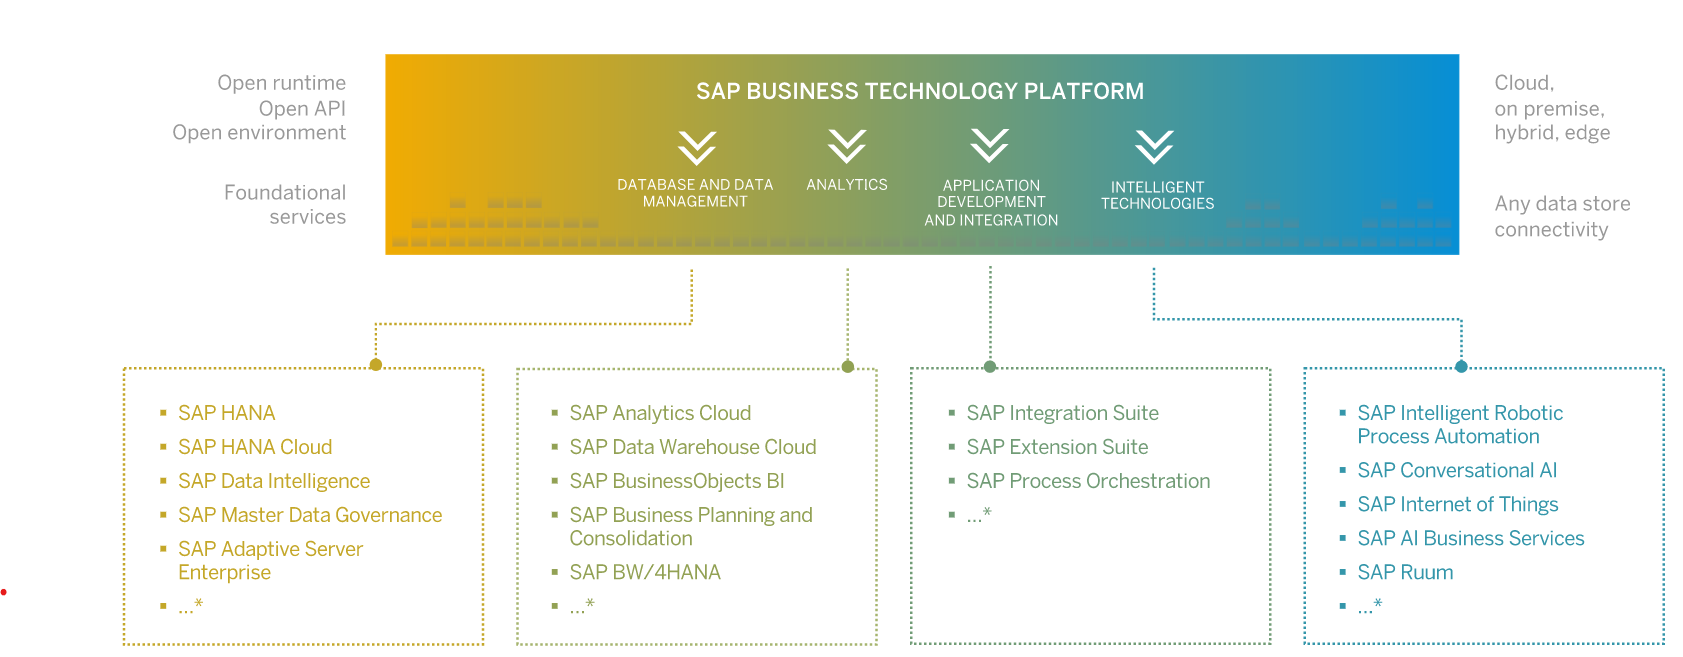 A plataforma de tecnologia empresarial da SAP é dividida em quatro aspectos